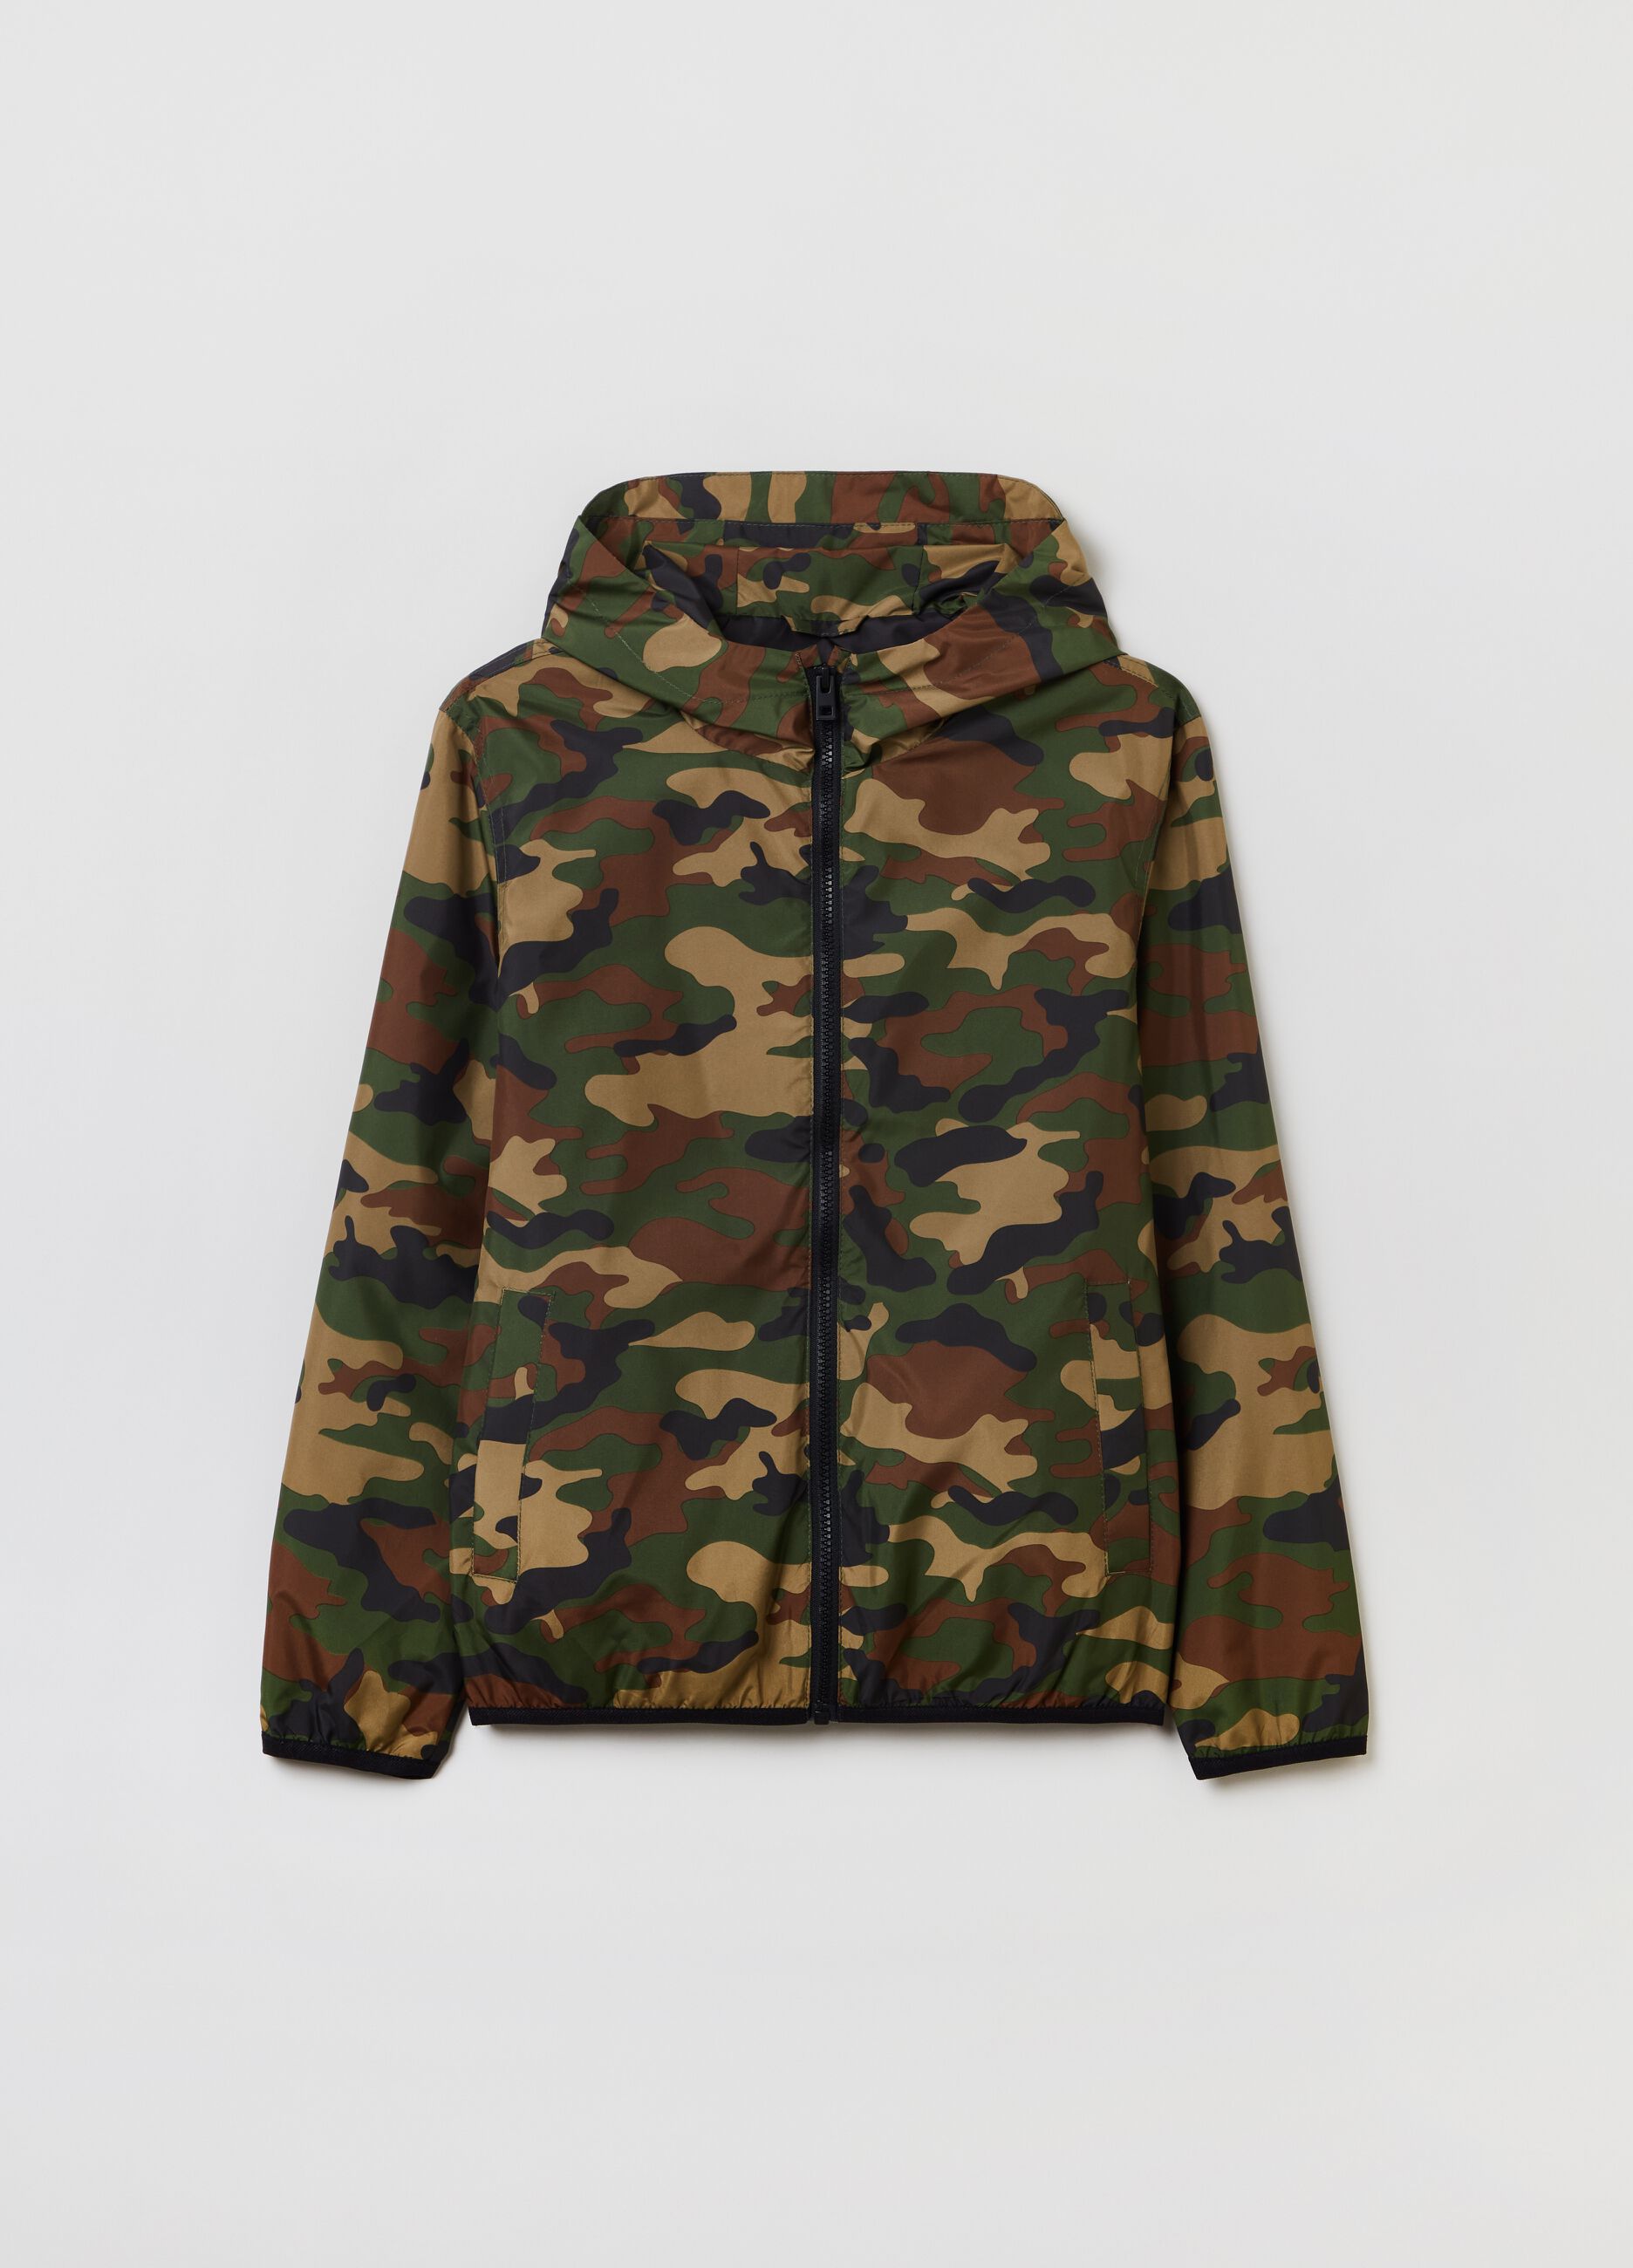 Full-zip camouflage sweatshirt with hood